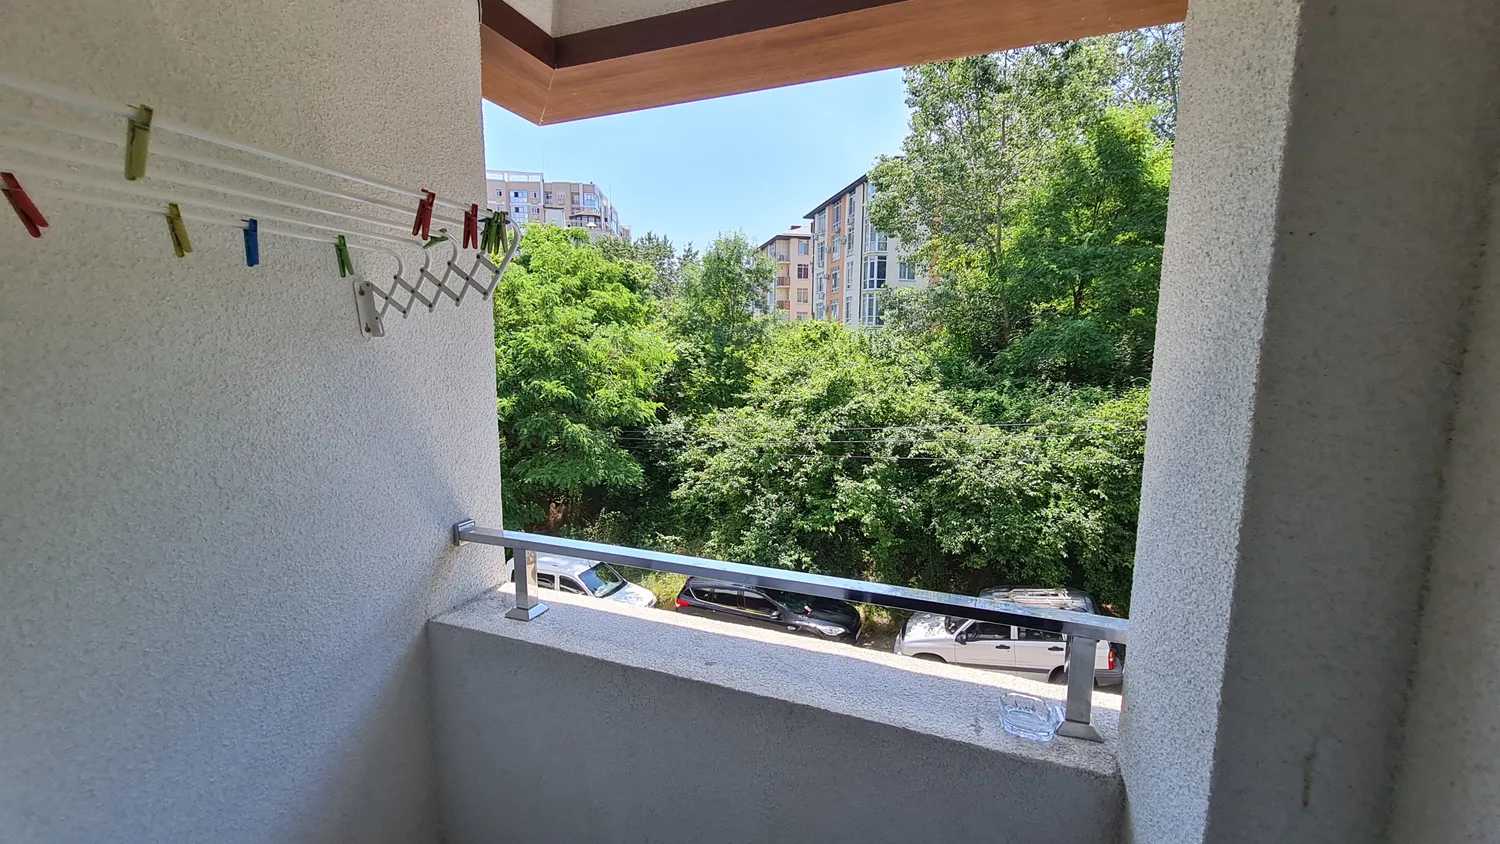 Condominium in Sotsji, Poltavskaya Street 10003988